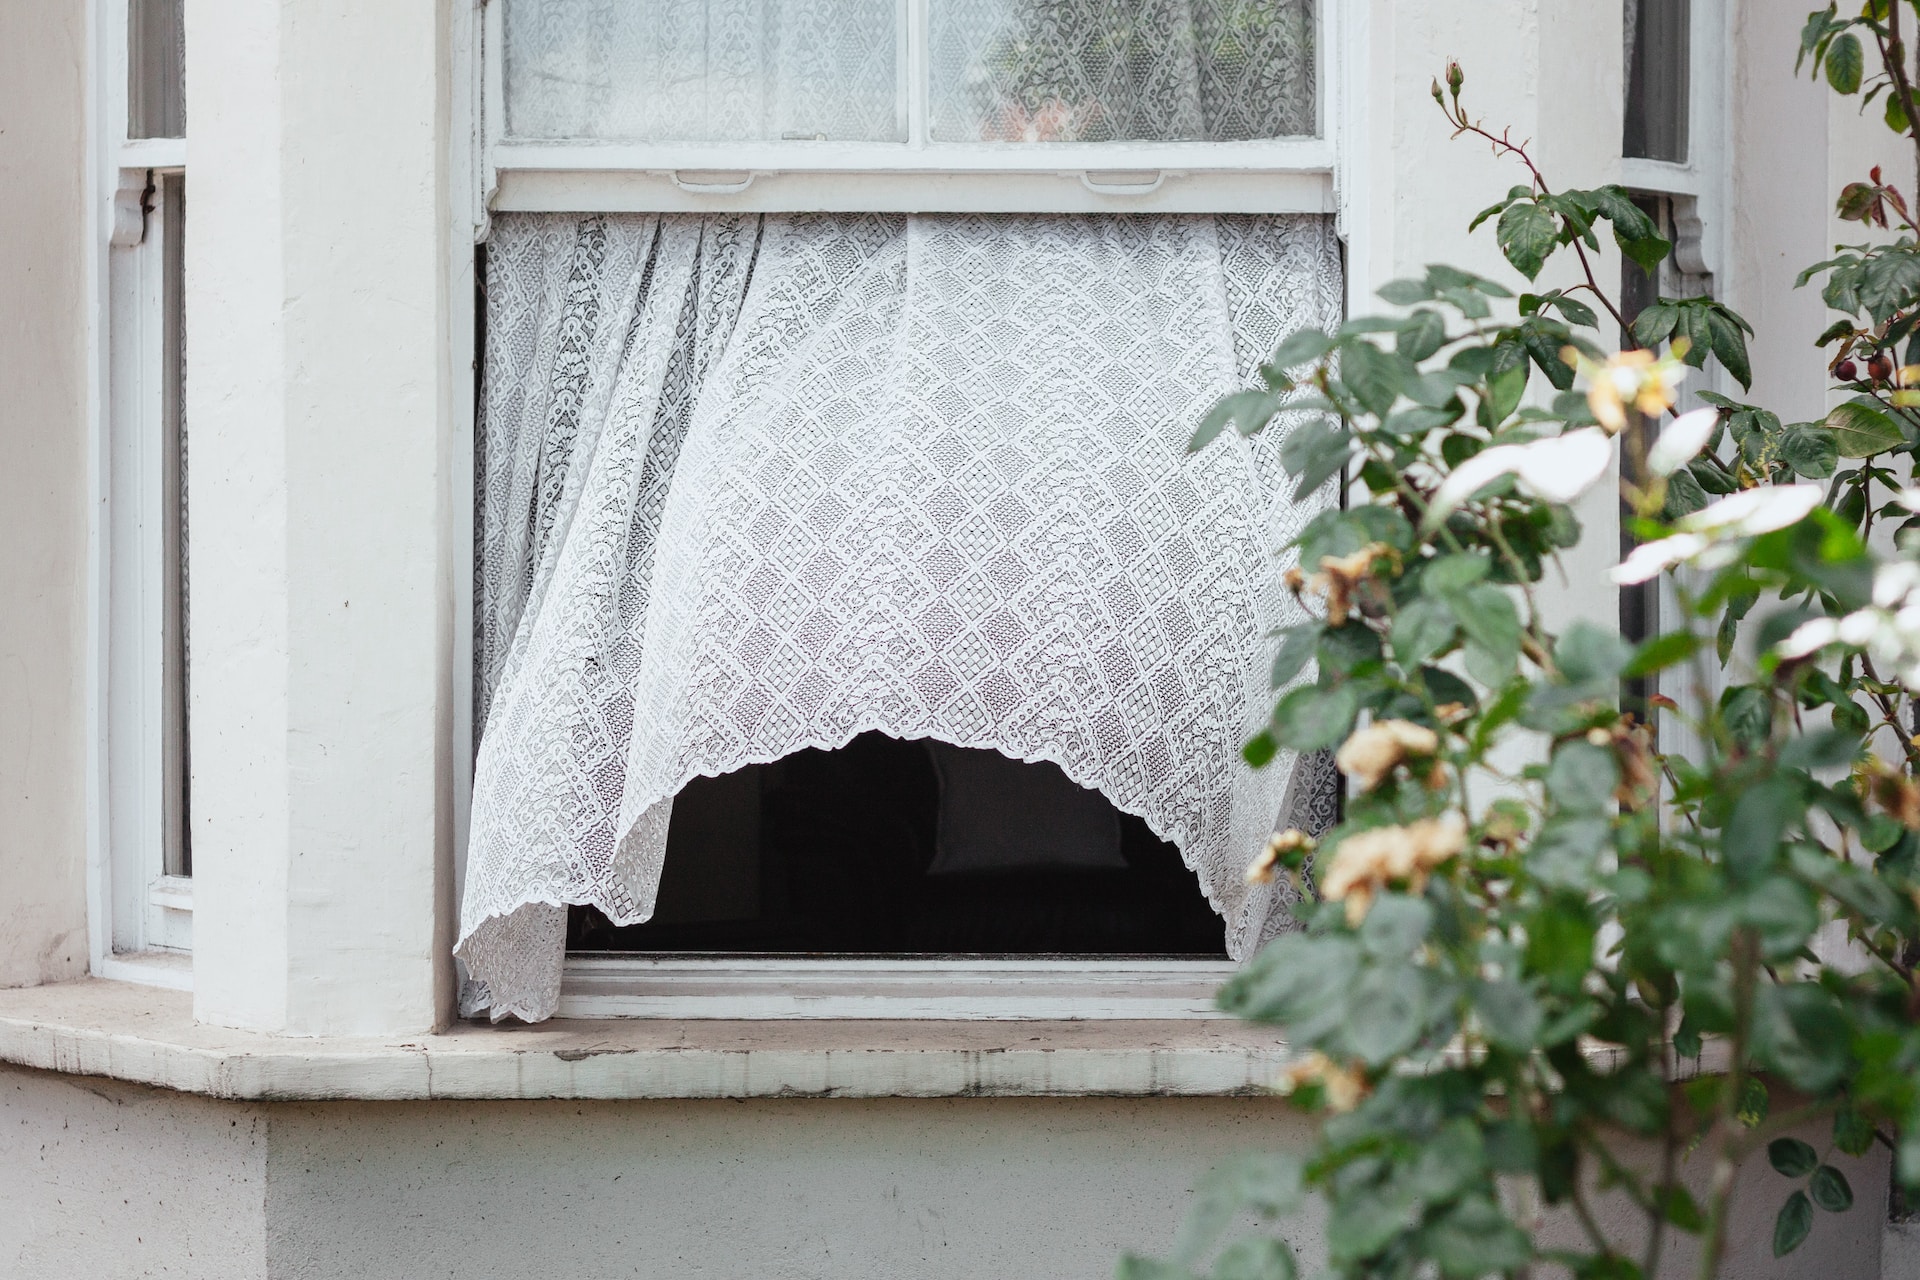 Пьяный россиянин выбросил годовалую дочь из окна в сугроб и забыл про неё на 4 дня